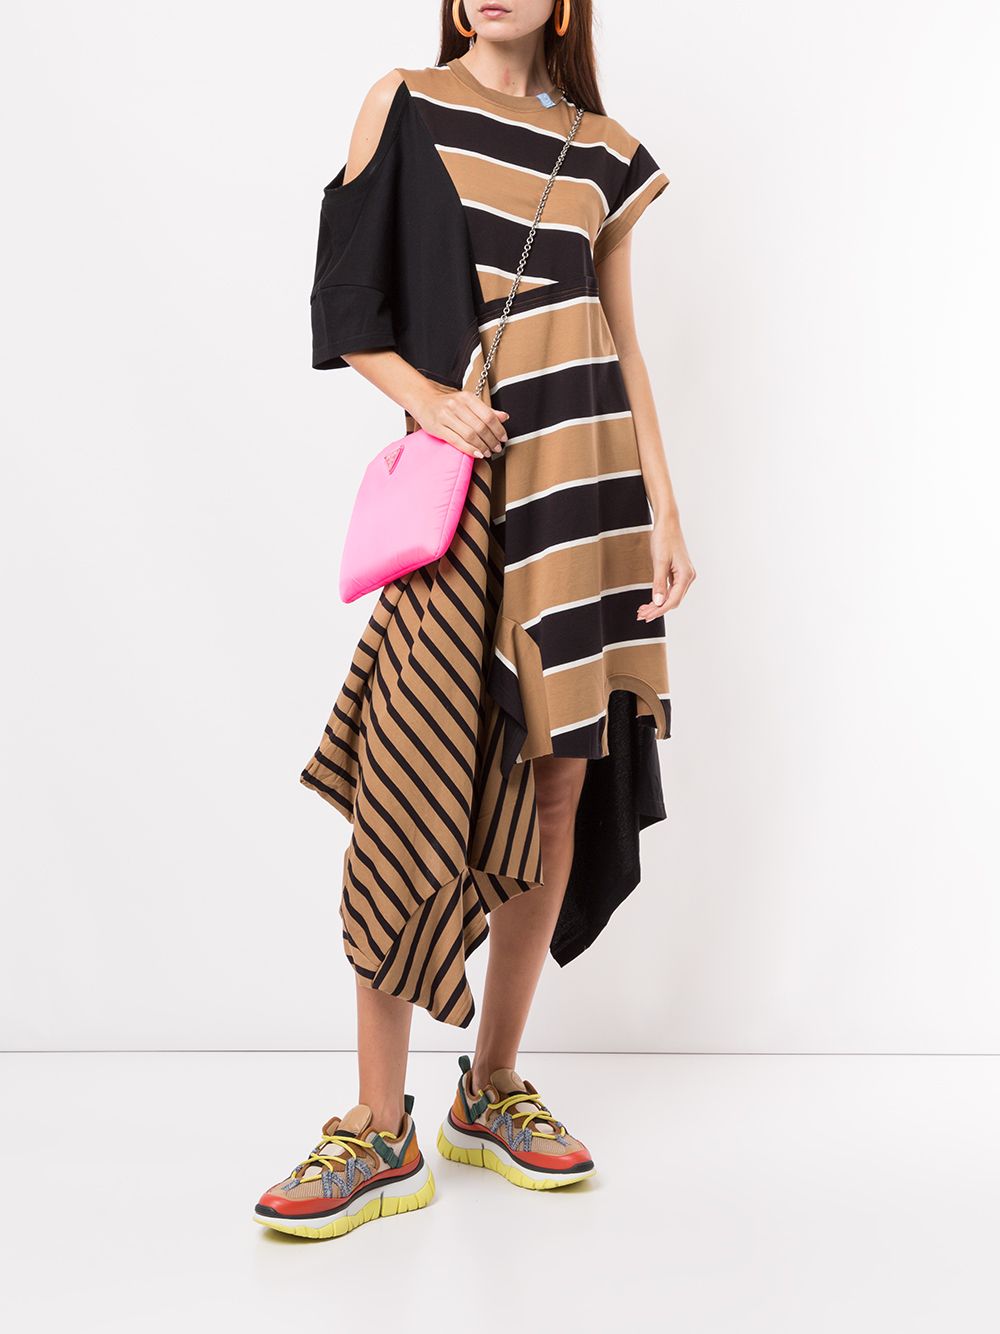 фото Maison mihara yasuhiro платье асимметричного кроя в полоску